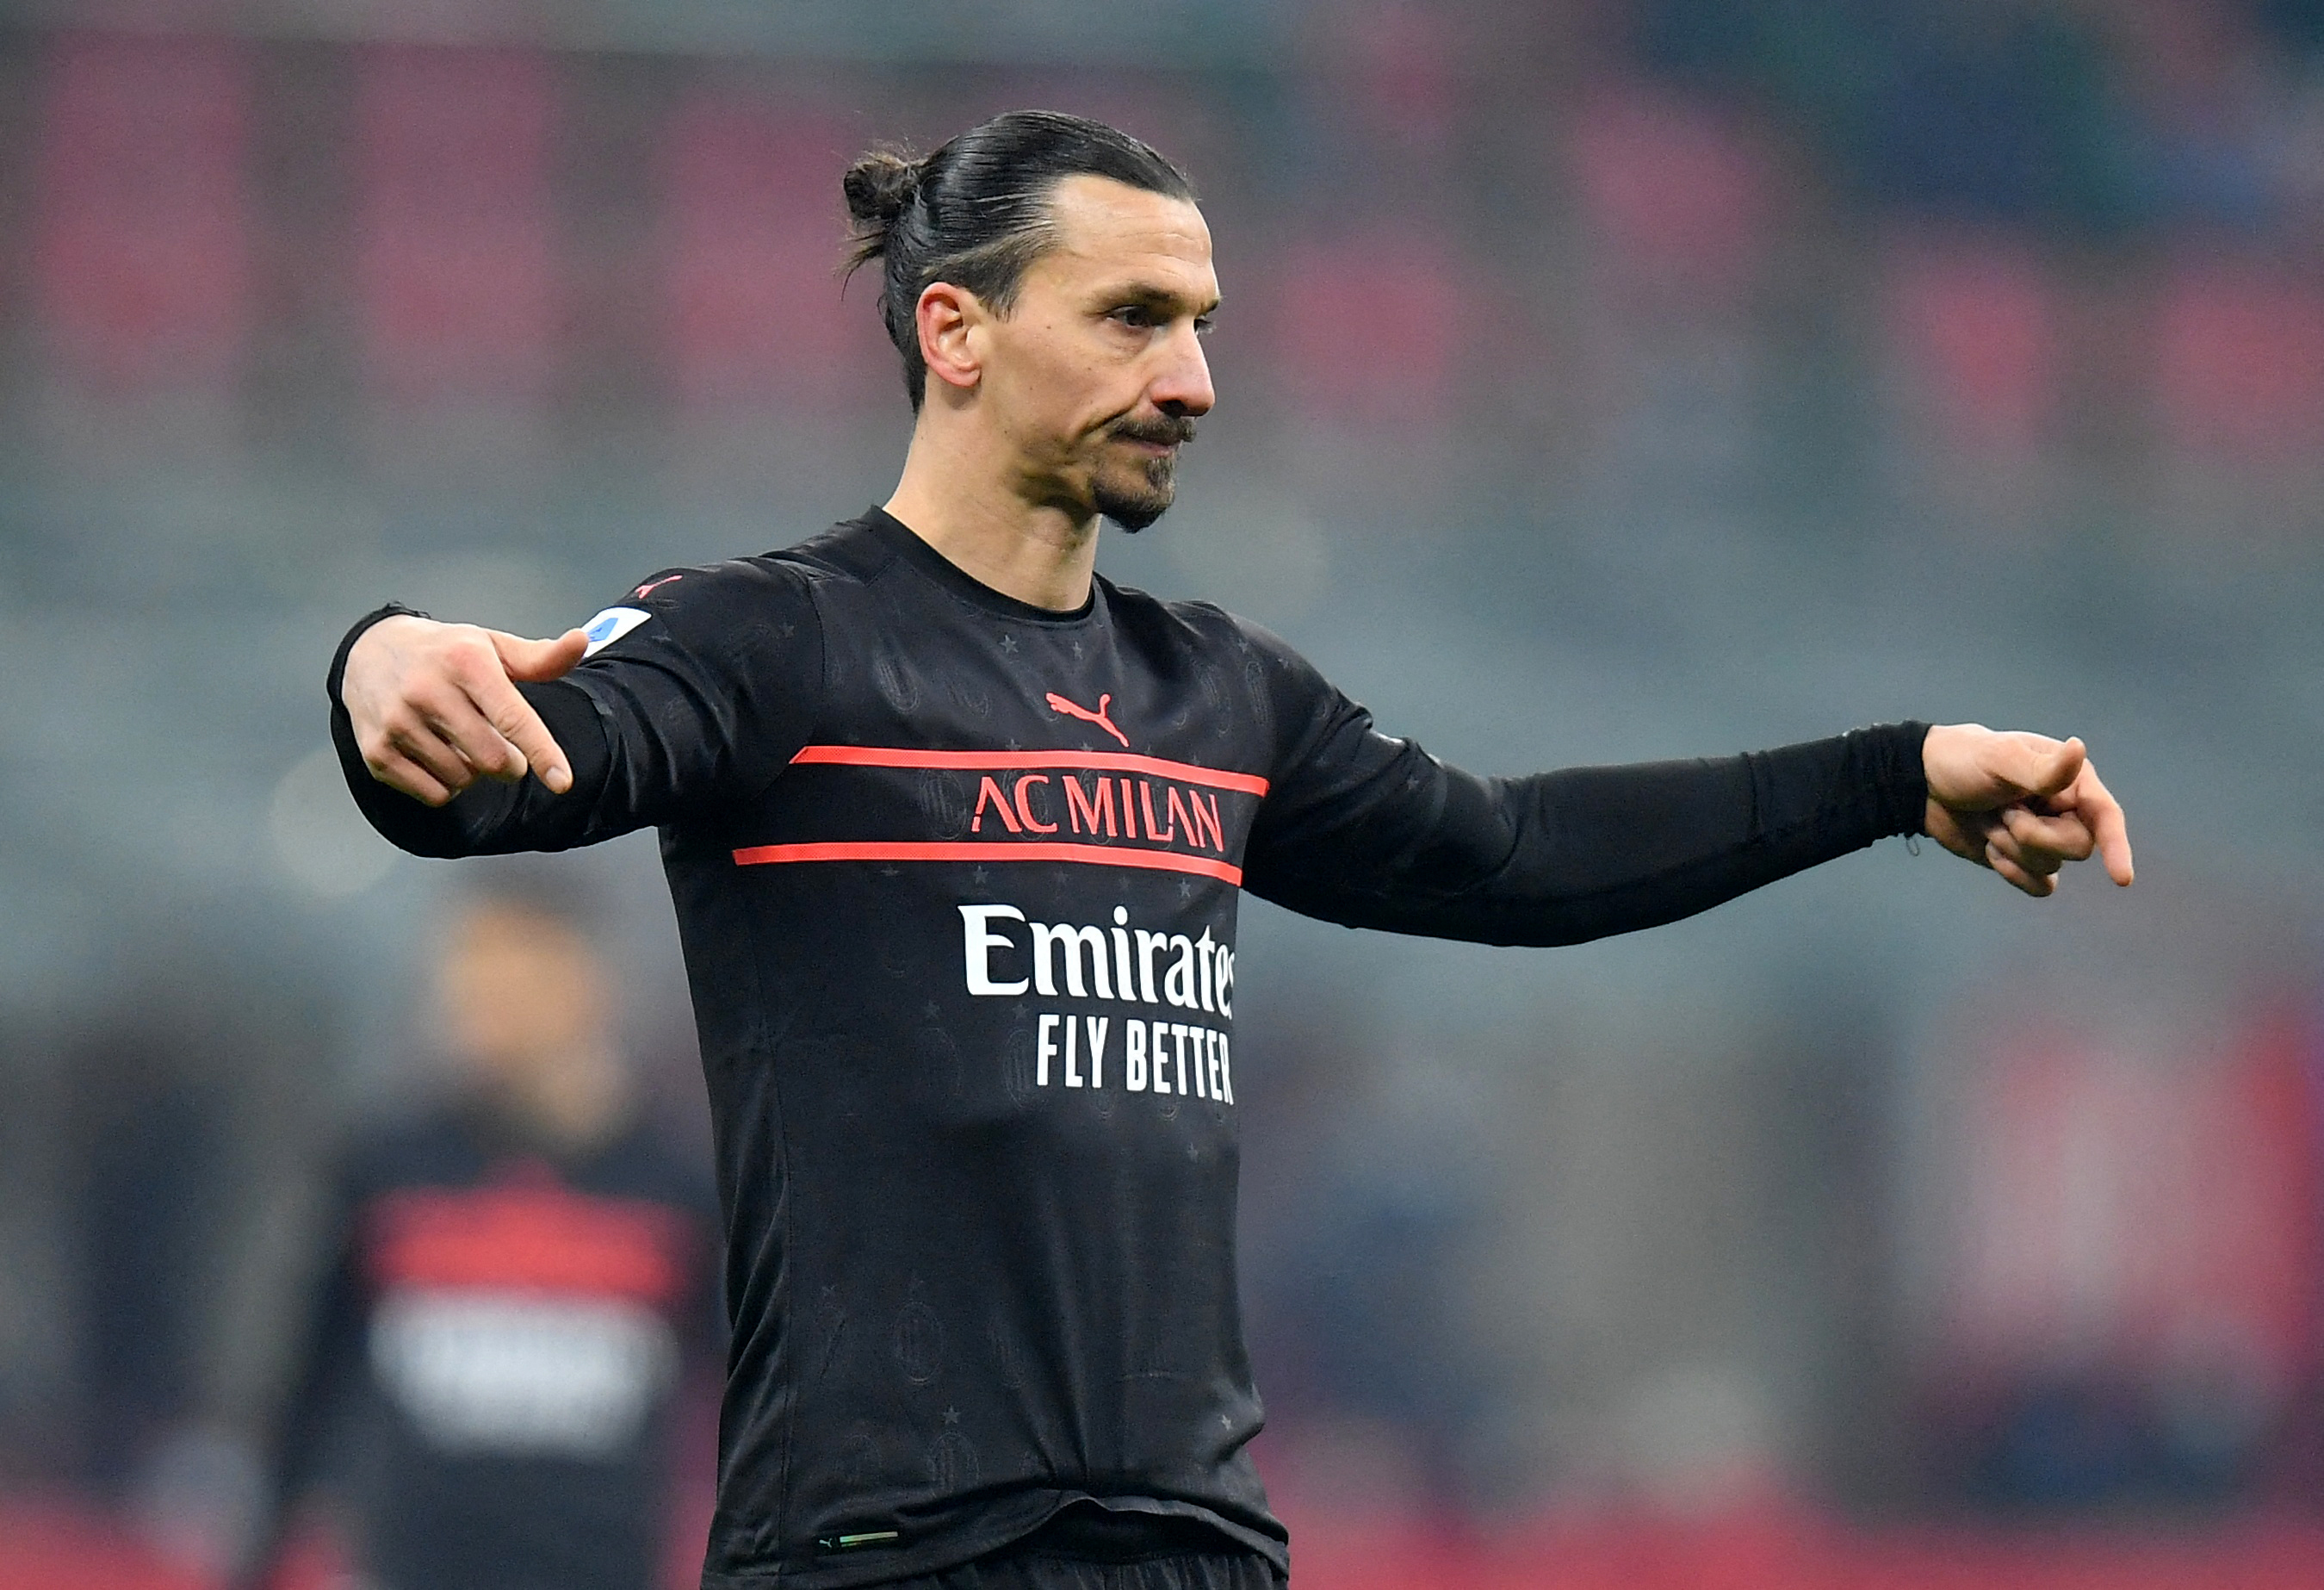 mount tirsdag Ooze AC Milan striker Ibrahimovic injured for Empoli match – Pioli | Reuters